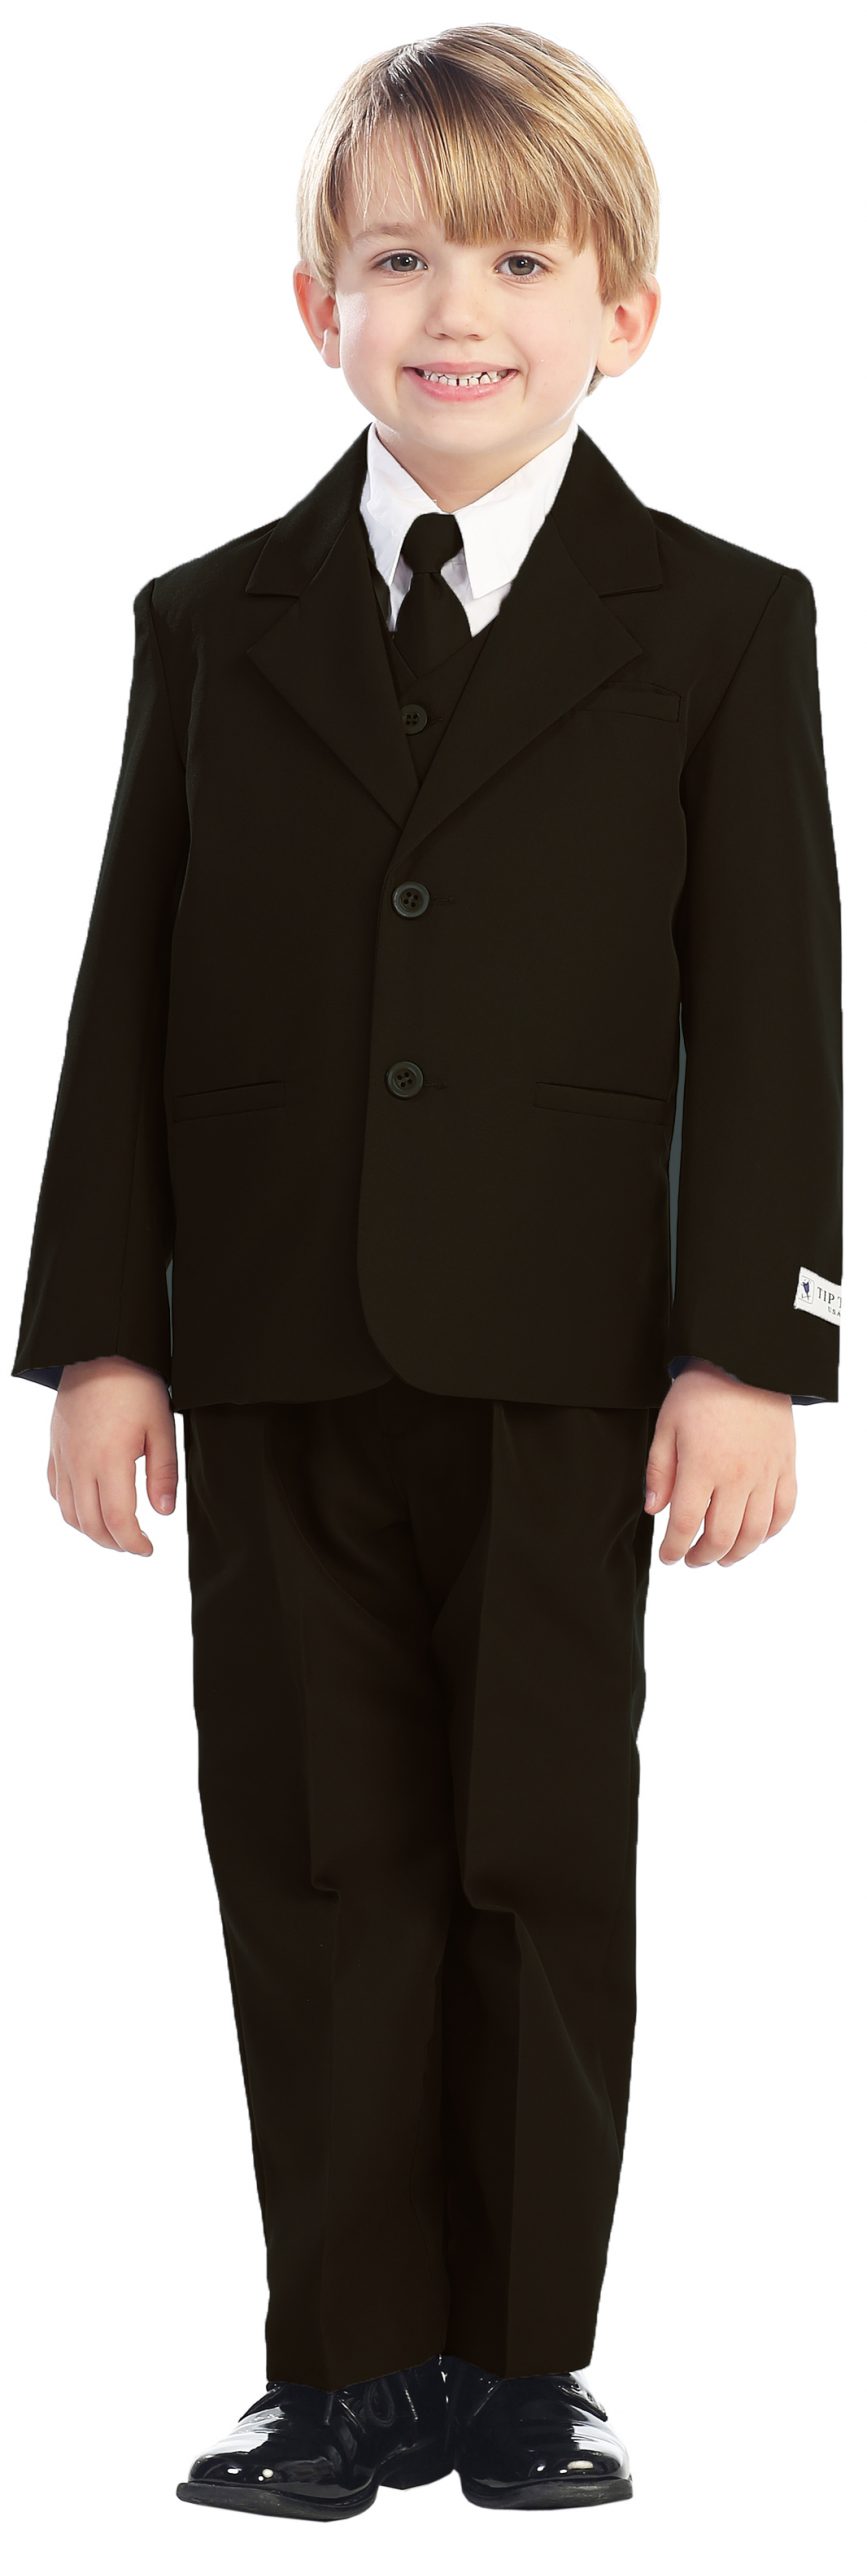 Avery Hill 5-Piece Boy's 2-Button Dress Suit Full-Back Vest - Brown L (12 - 18 Months)